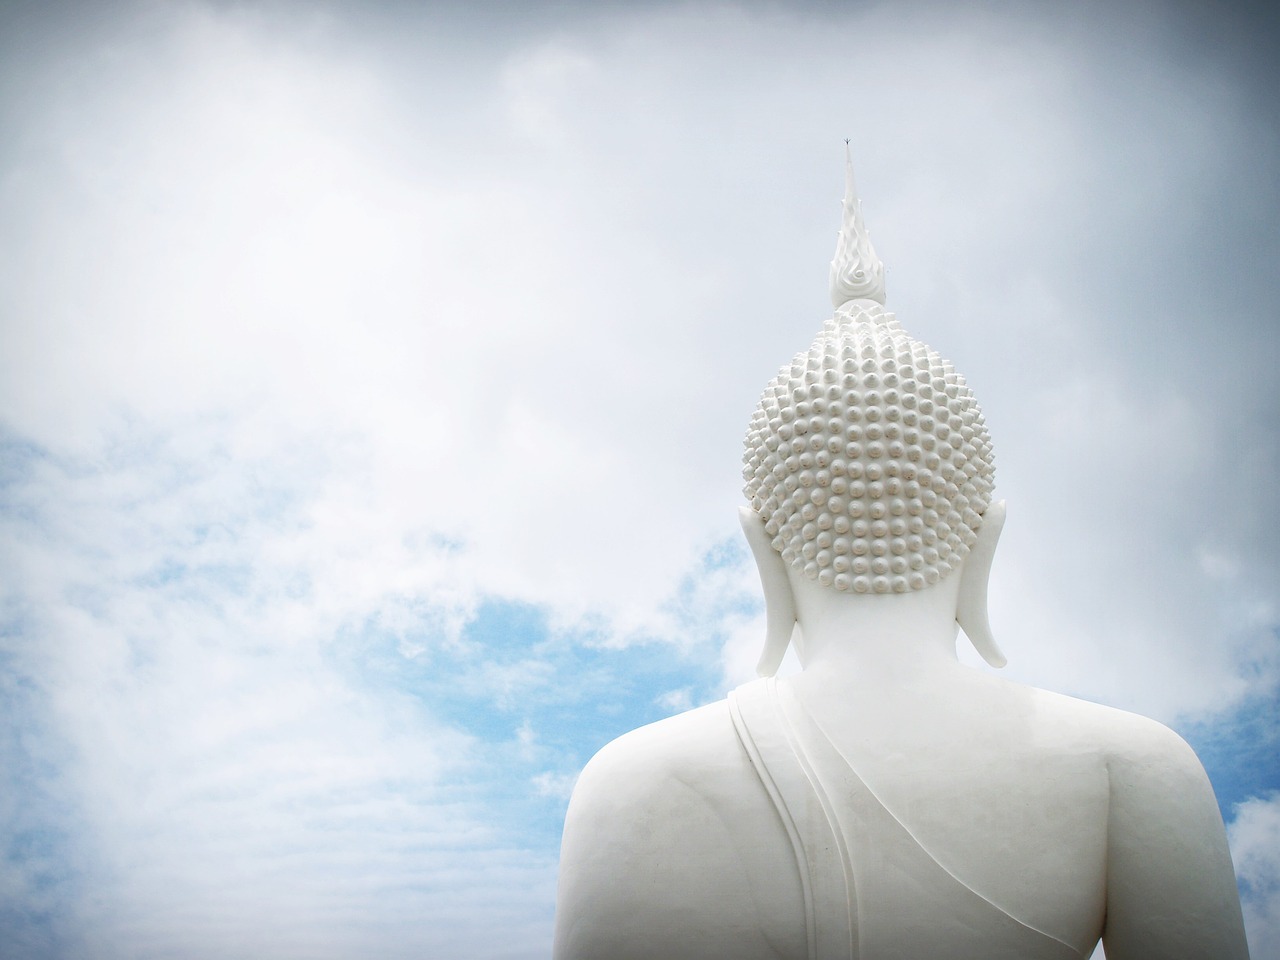 buddha india mind free photo